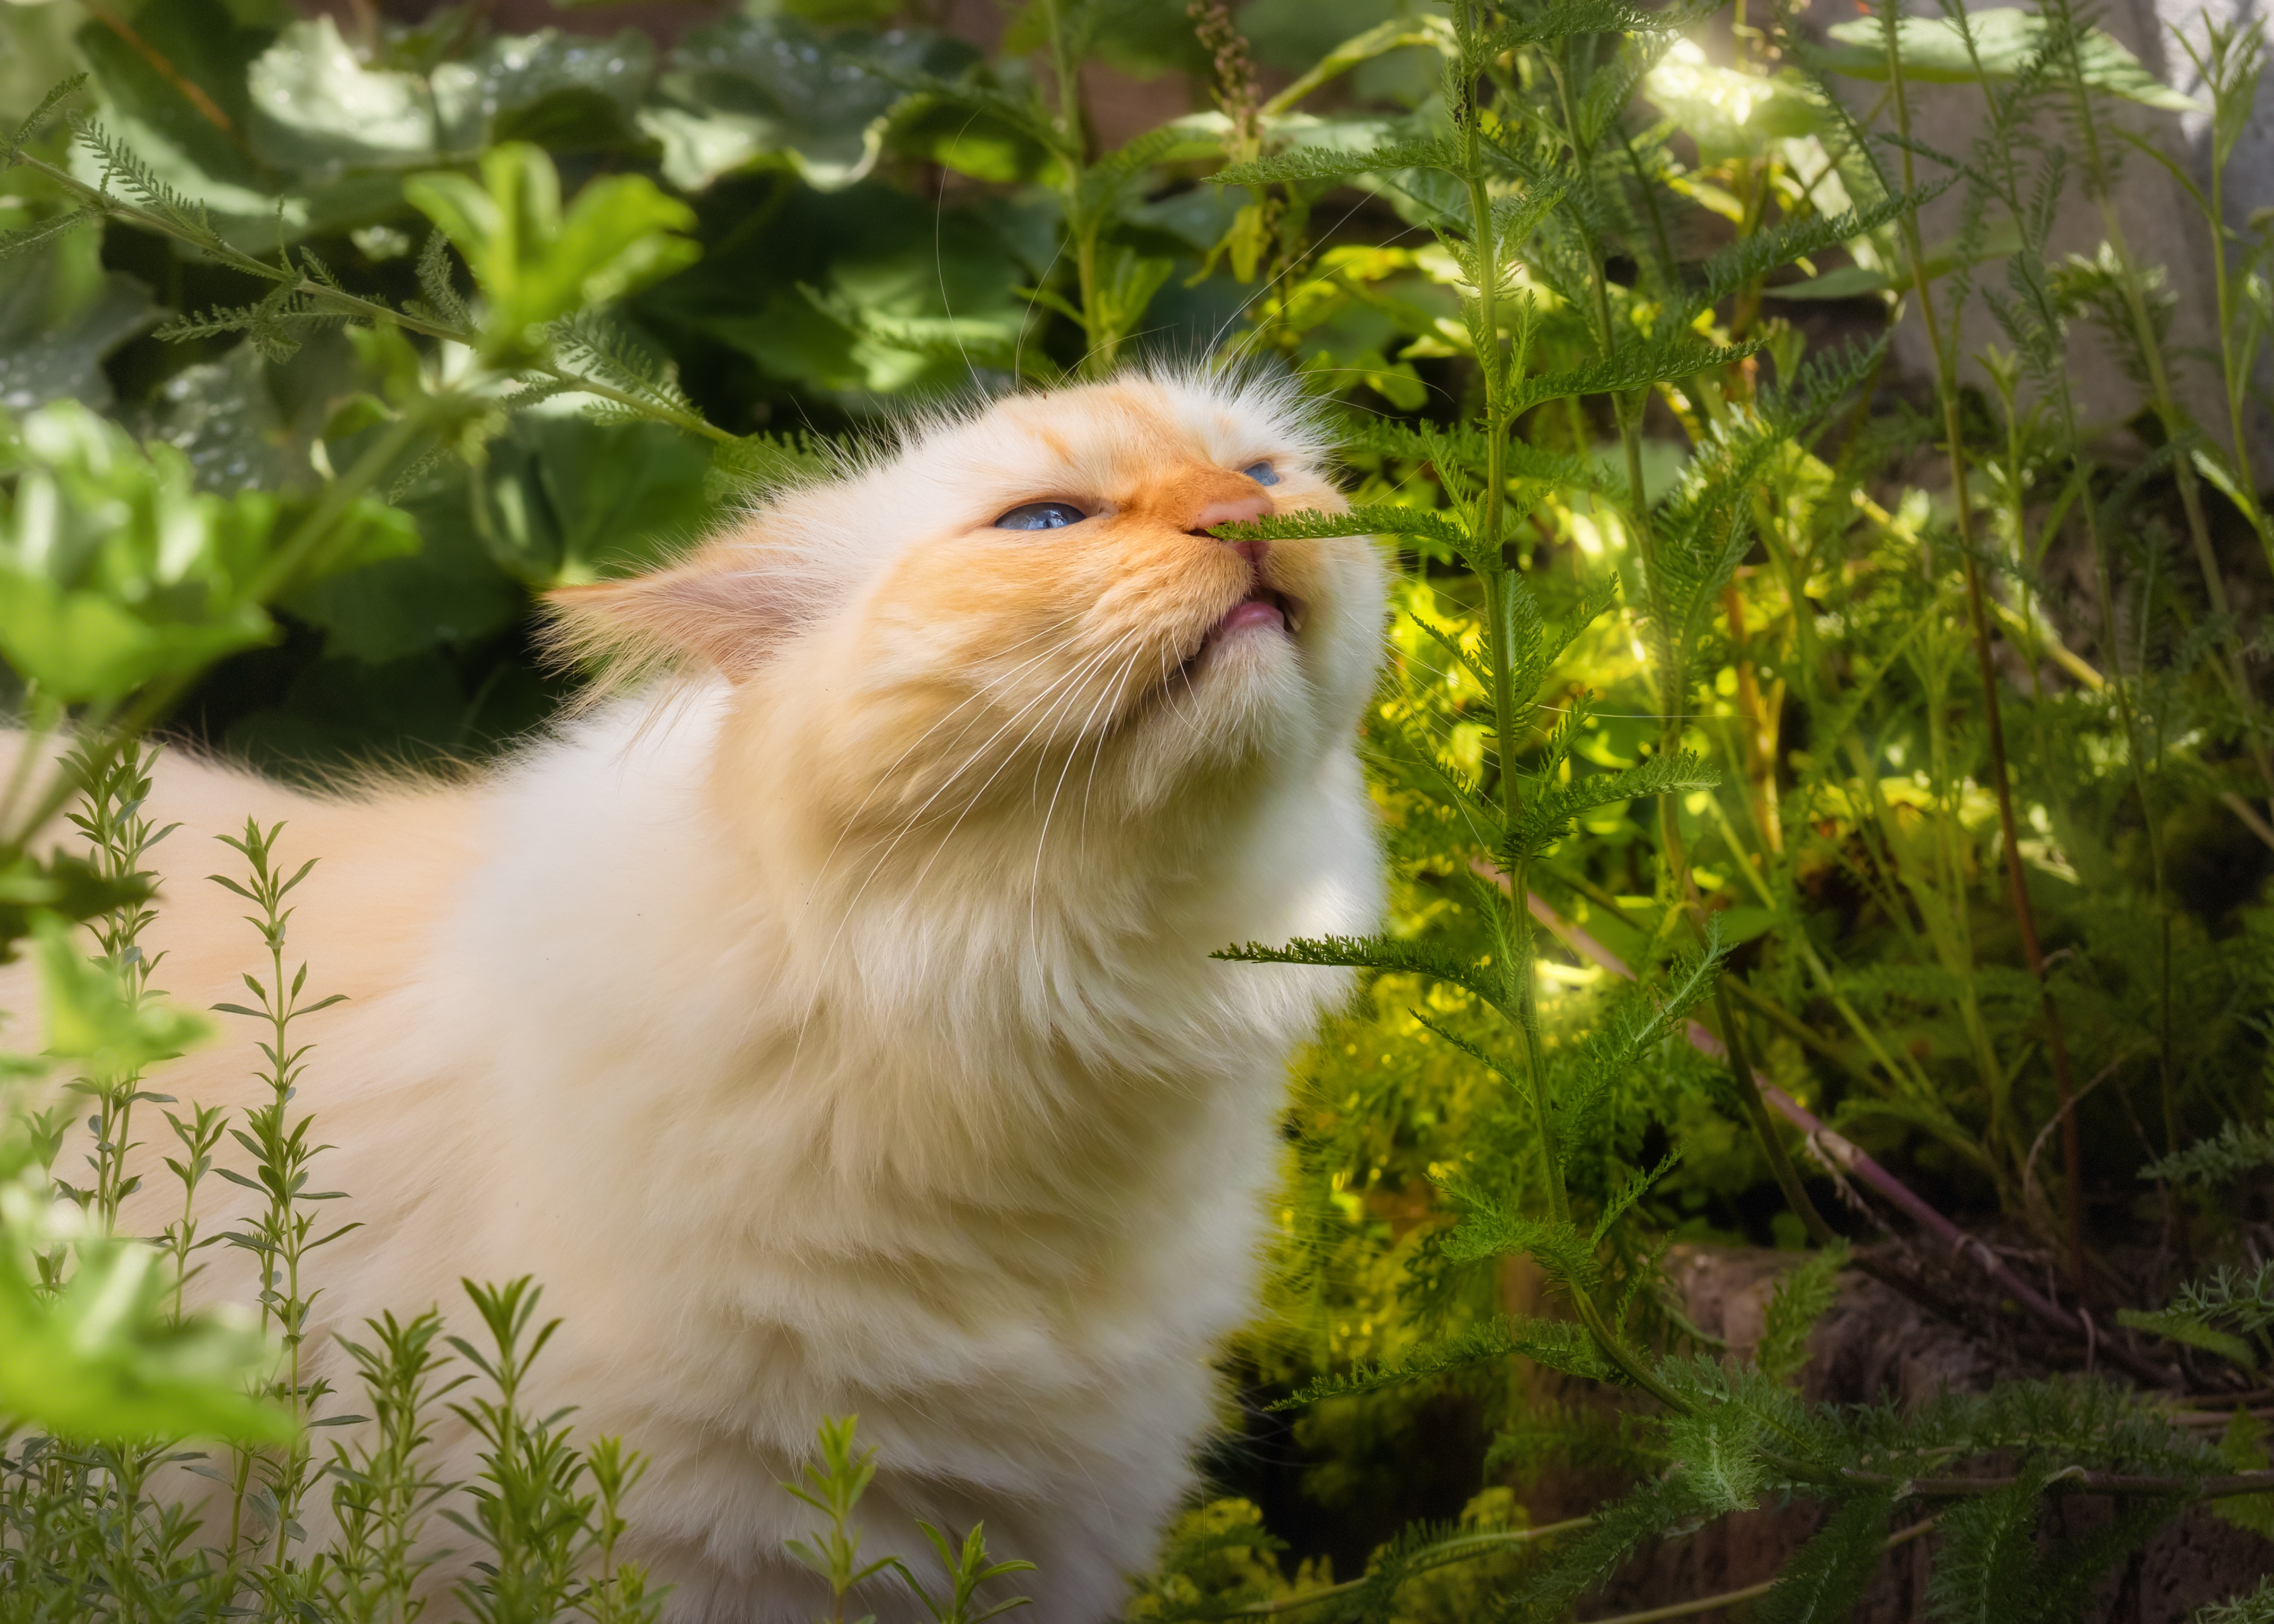 Pourquoi les chats mangent-ils de l'herbe ?